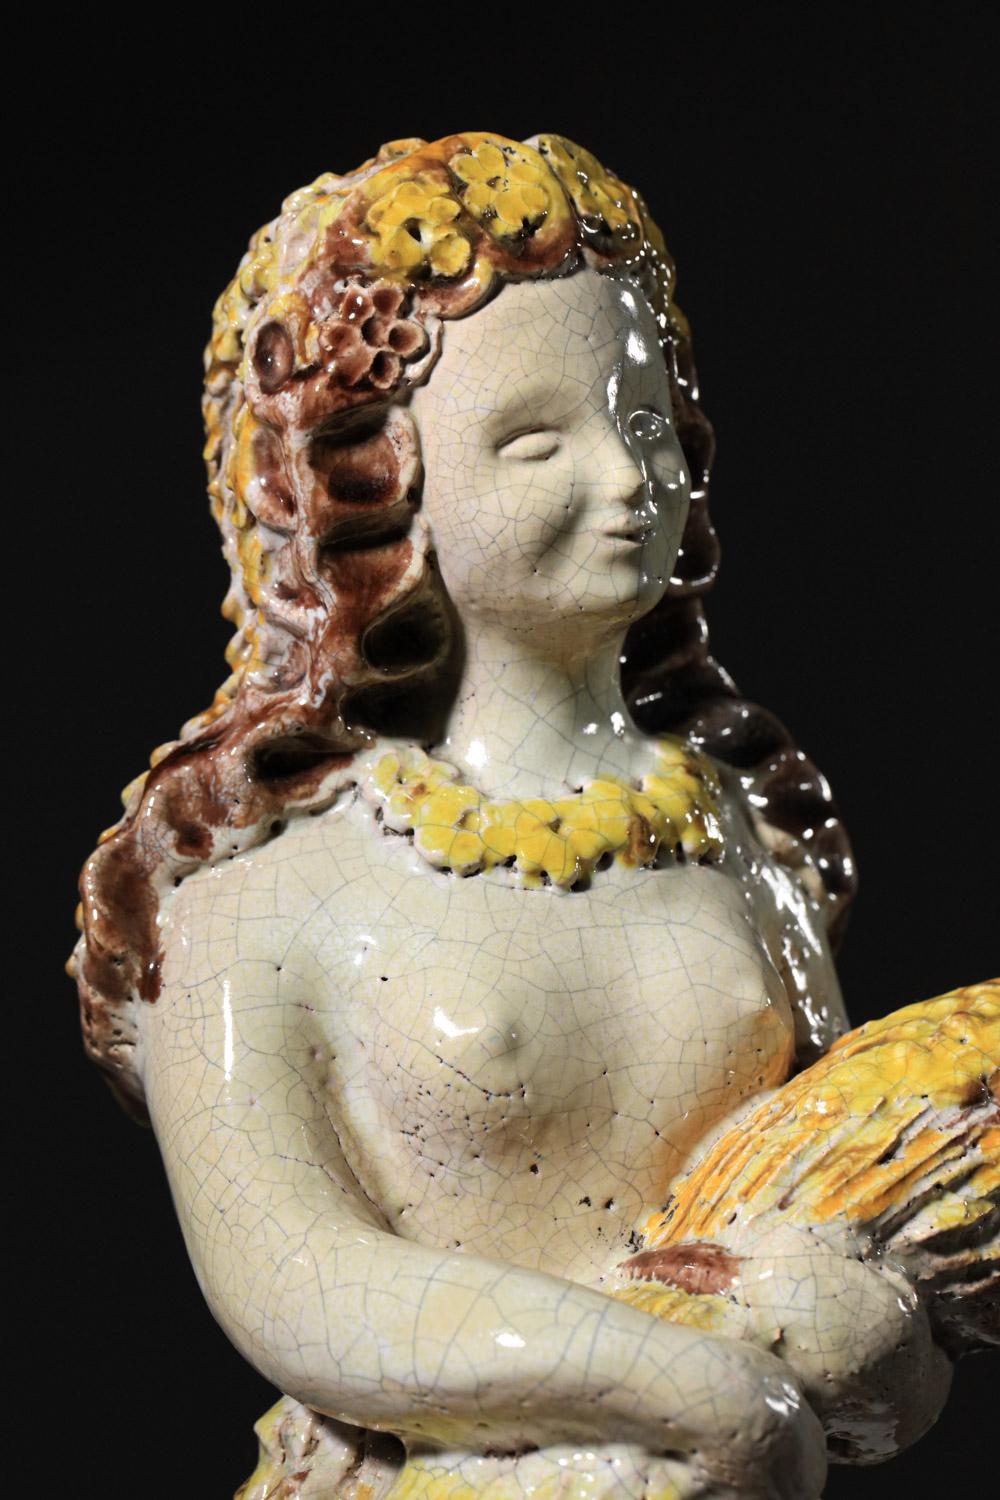 Keramische Göttin von Denise Picard aus der Werkstatt von Paul Pouchol H687 
Große Keramik der französischen Künstlerin Denise Picard, signiert vom Studio Paul Pouchol in den 1940er Jahren. 
Glasierte Keramik in Gelb- und Weißtönen mit der